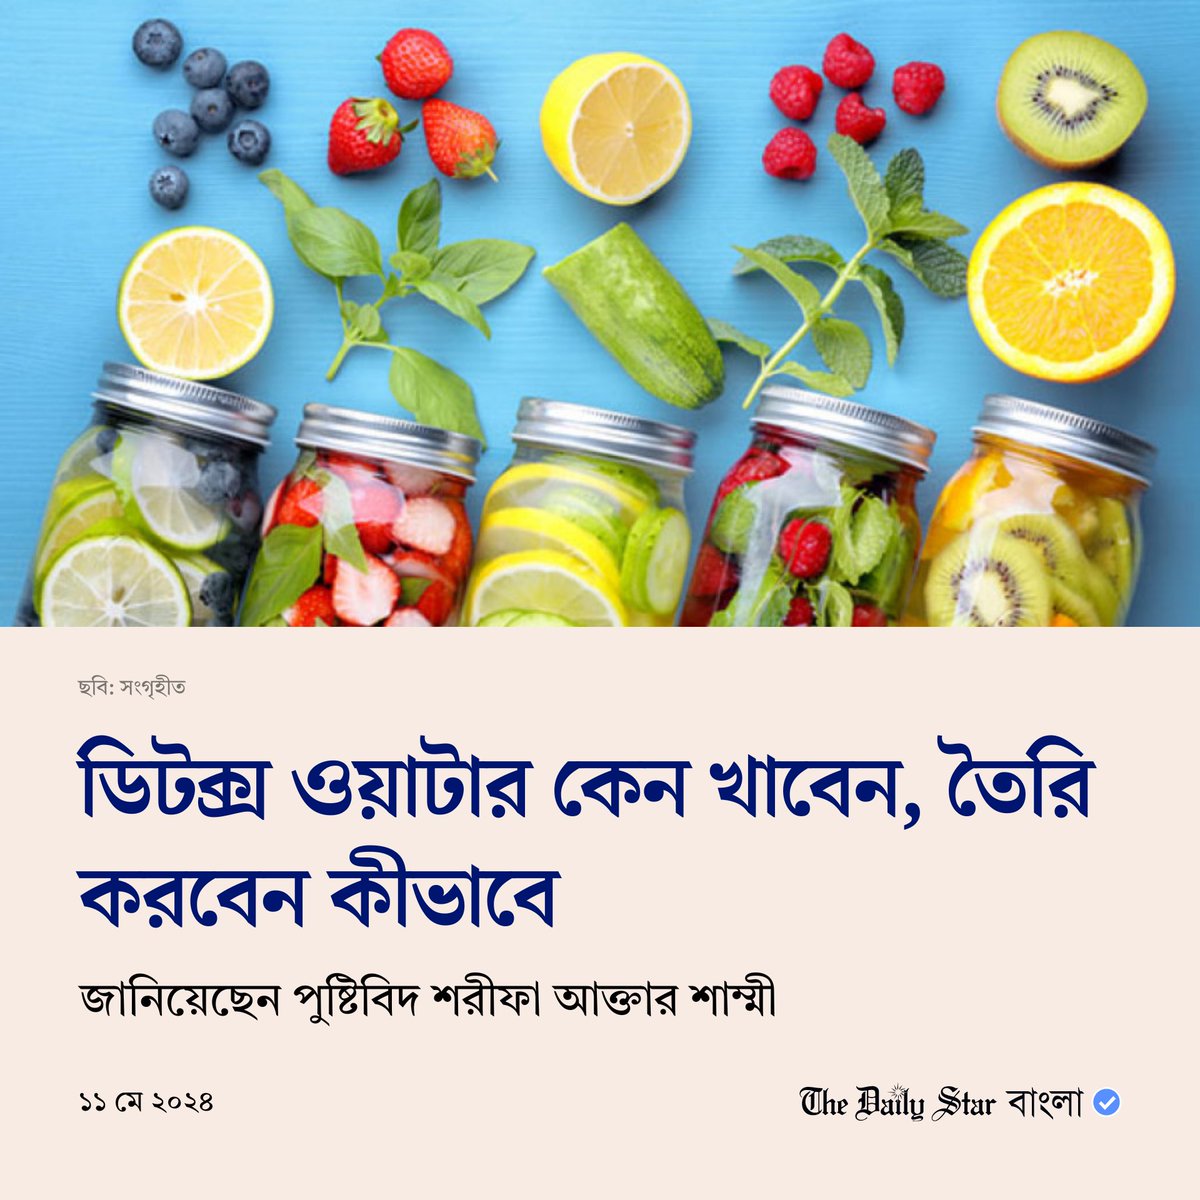 বিস্তারিতঃ bangla.thedailystar.net/life-living/fo…
#BanglaNews #LifeStyleNews #Health